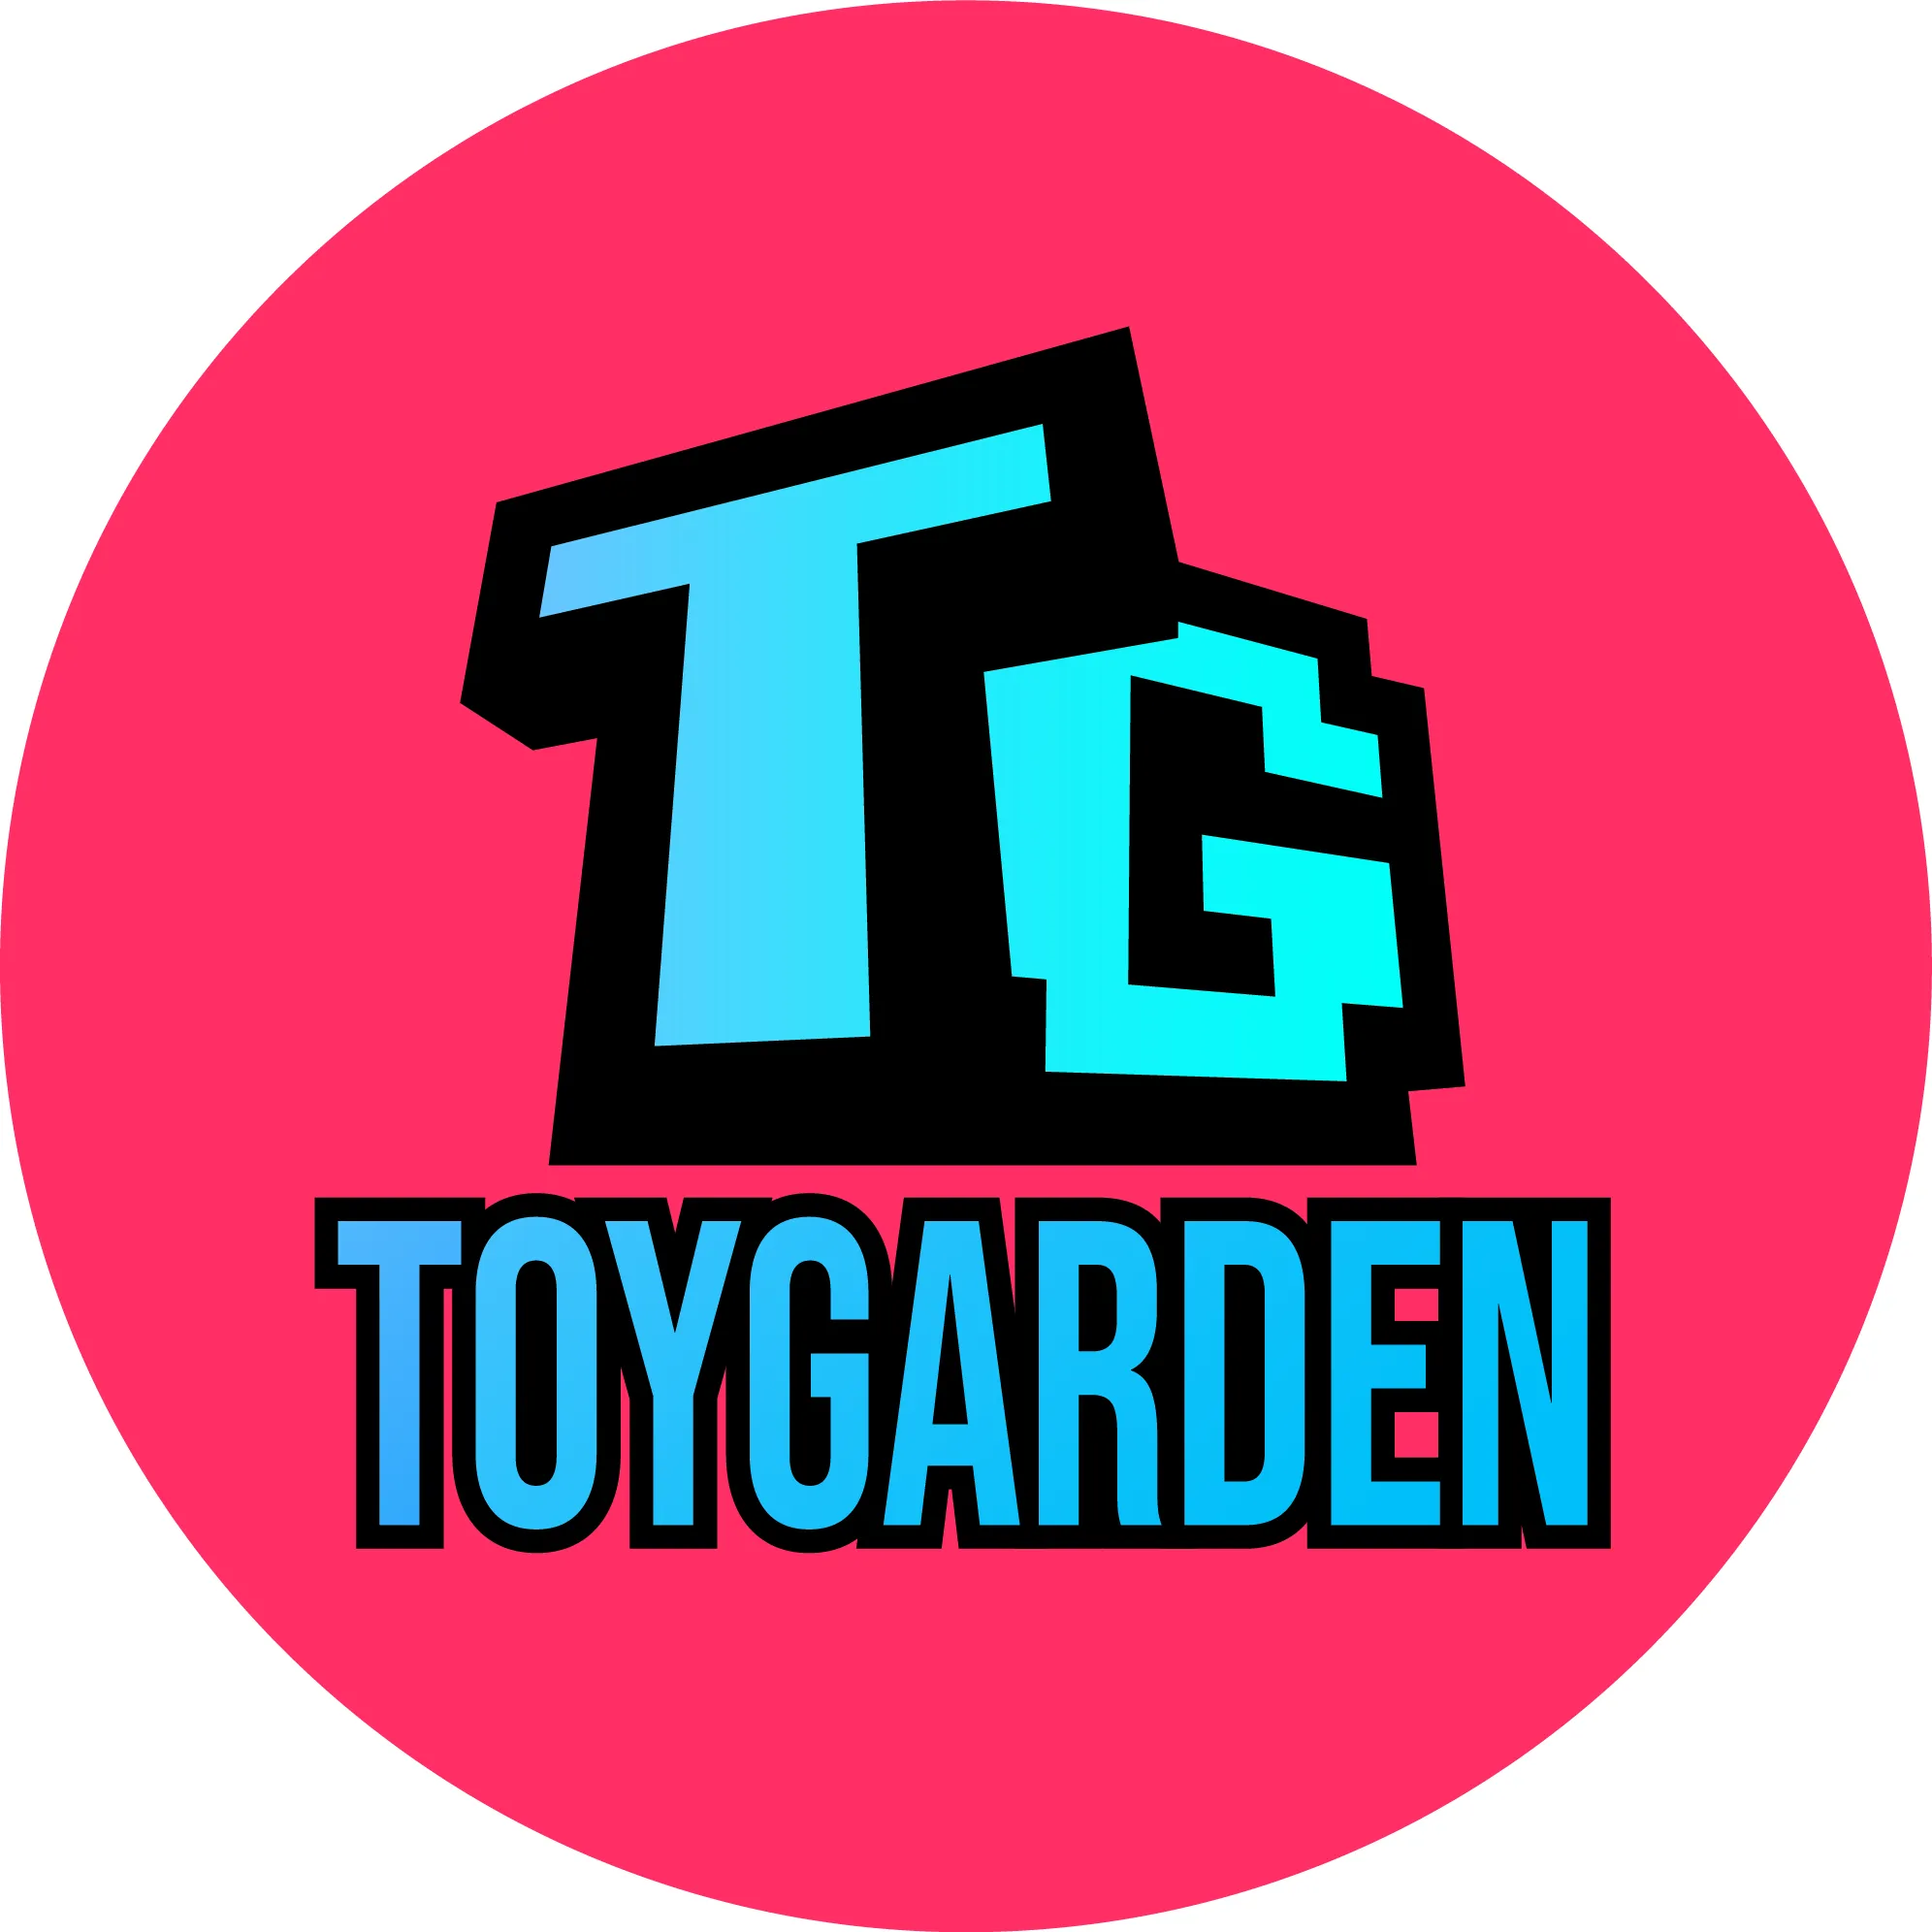 Toy Garden